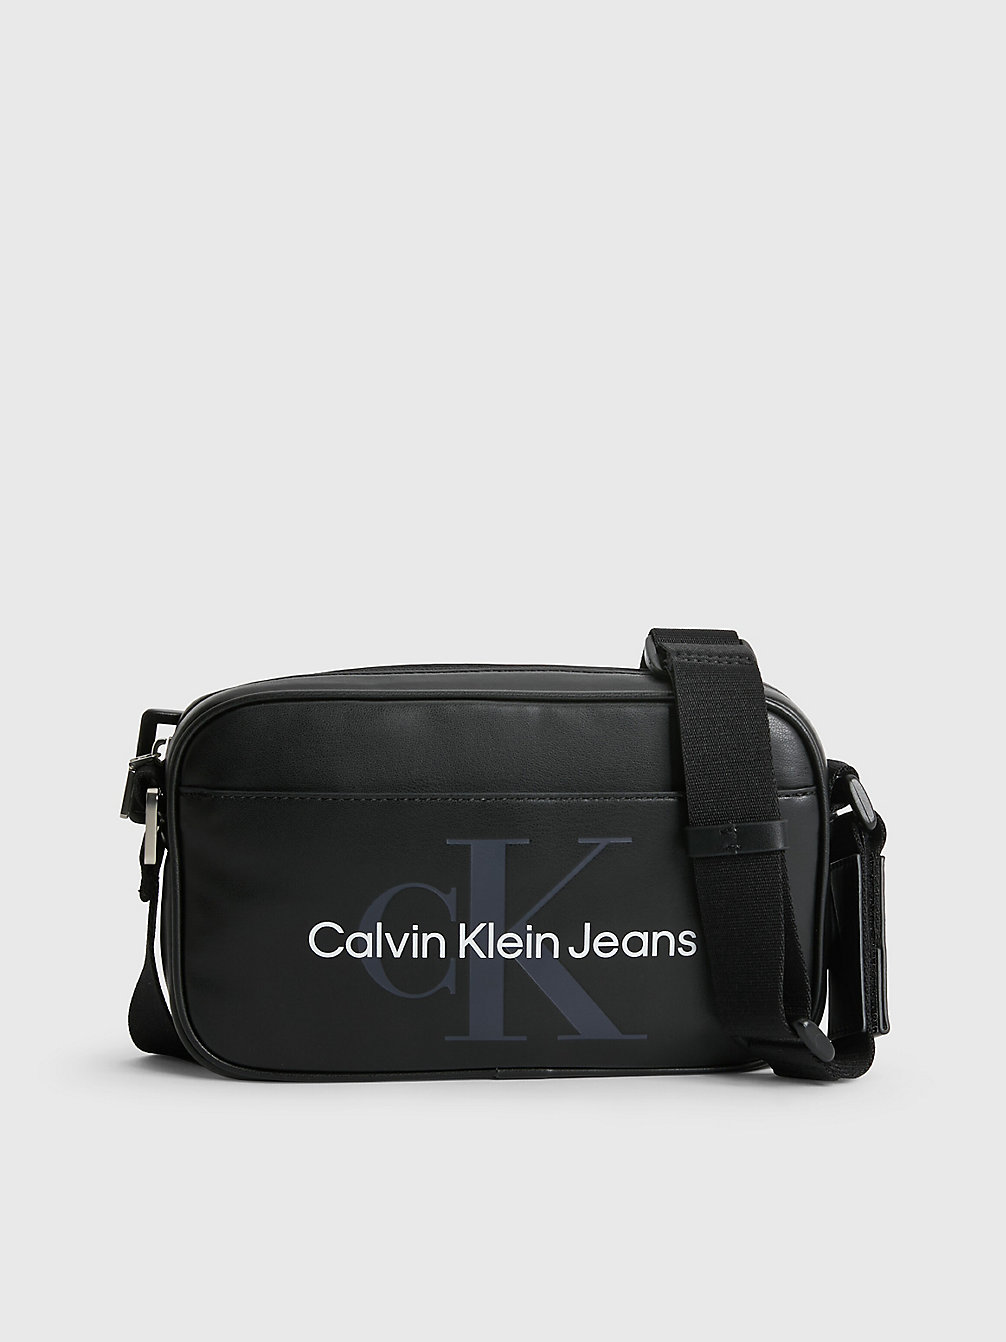 BLACK > Torba Przez Ramię > undefined Mężczyźni - Calvin Klein